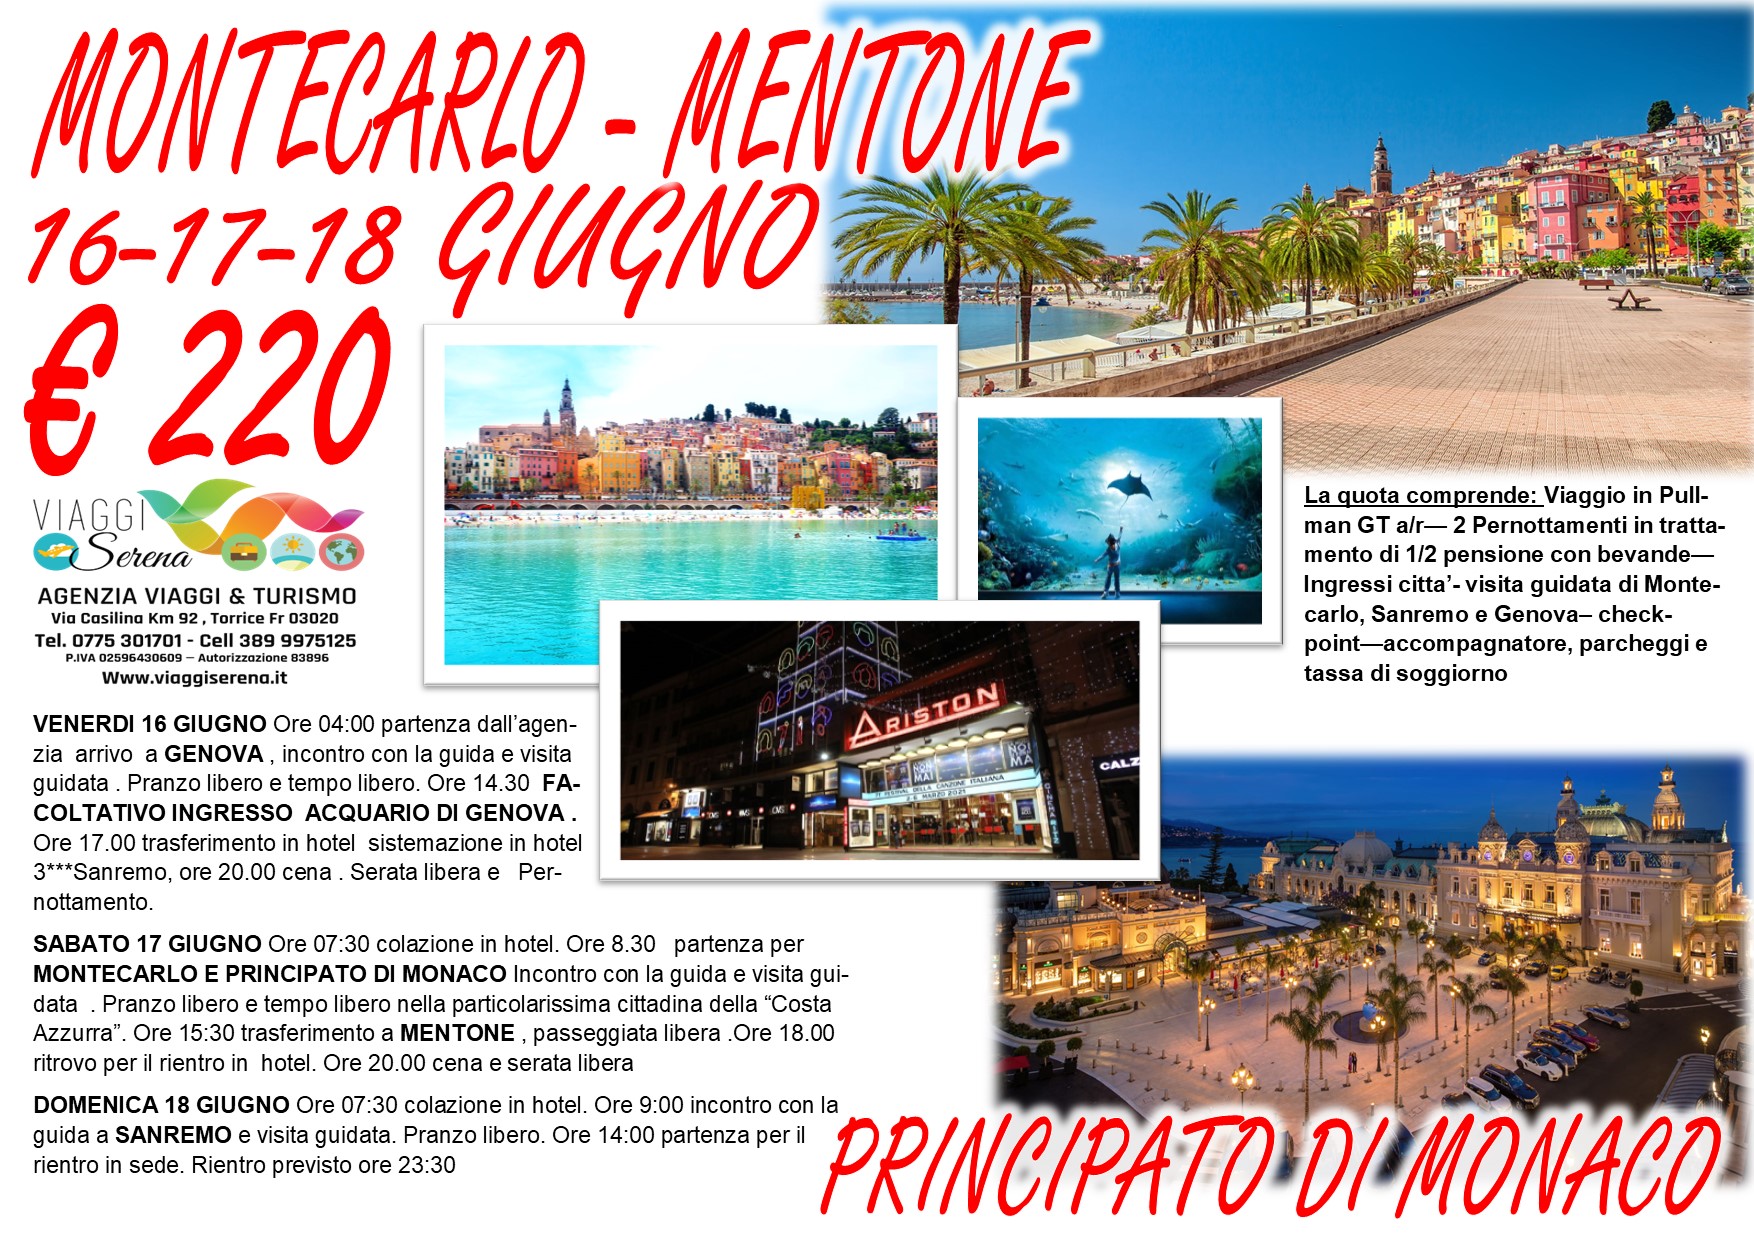 Viaggi di gruppo: Montecarlo, Mentone, Sanremo &, Principato di Monaco & Genova 16-17-18 Giugno €220,00